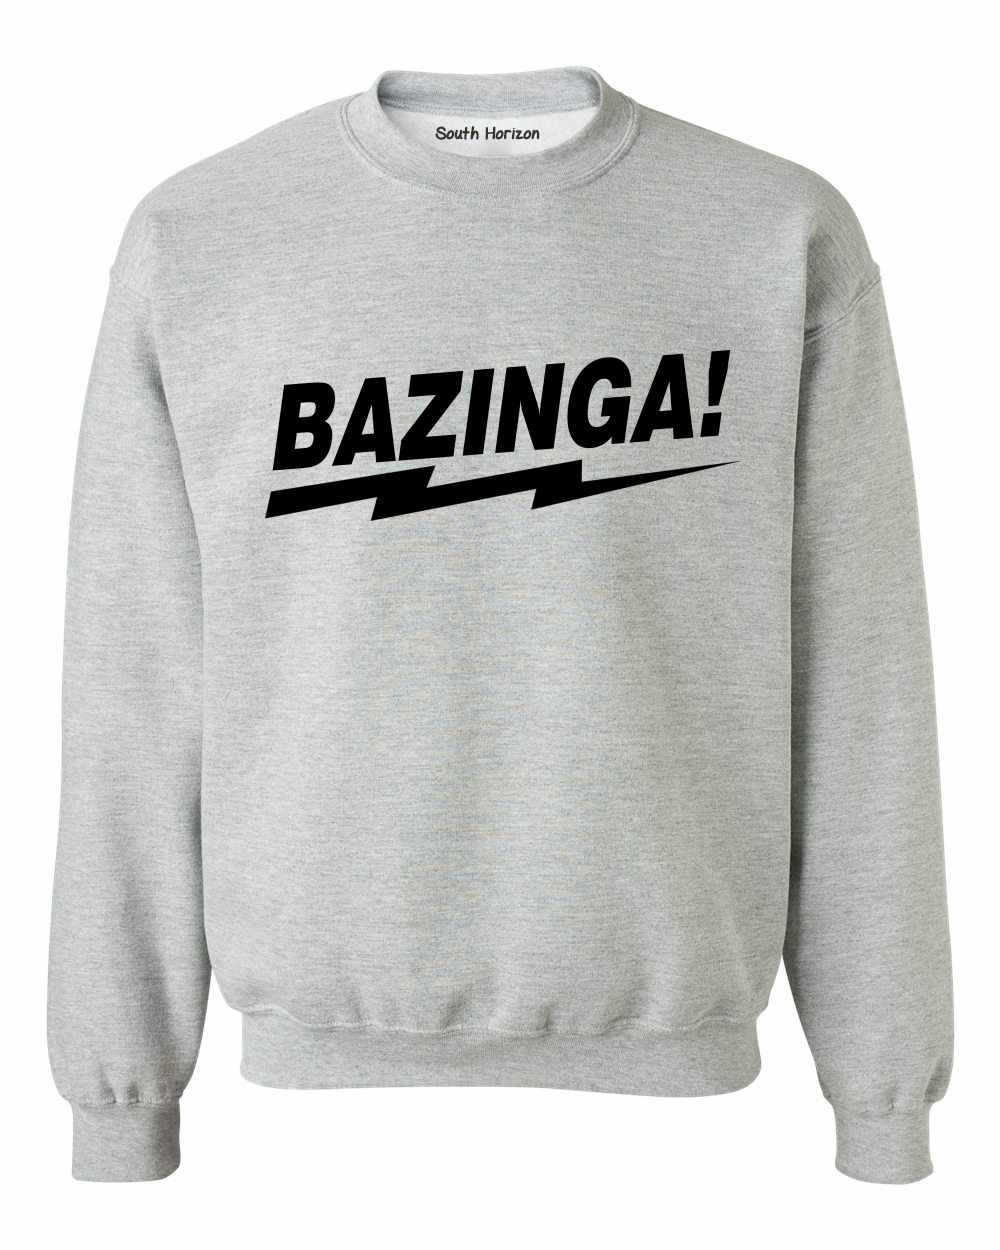 BAZINGA! on SweatShirt